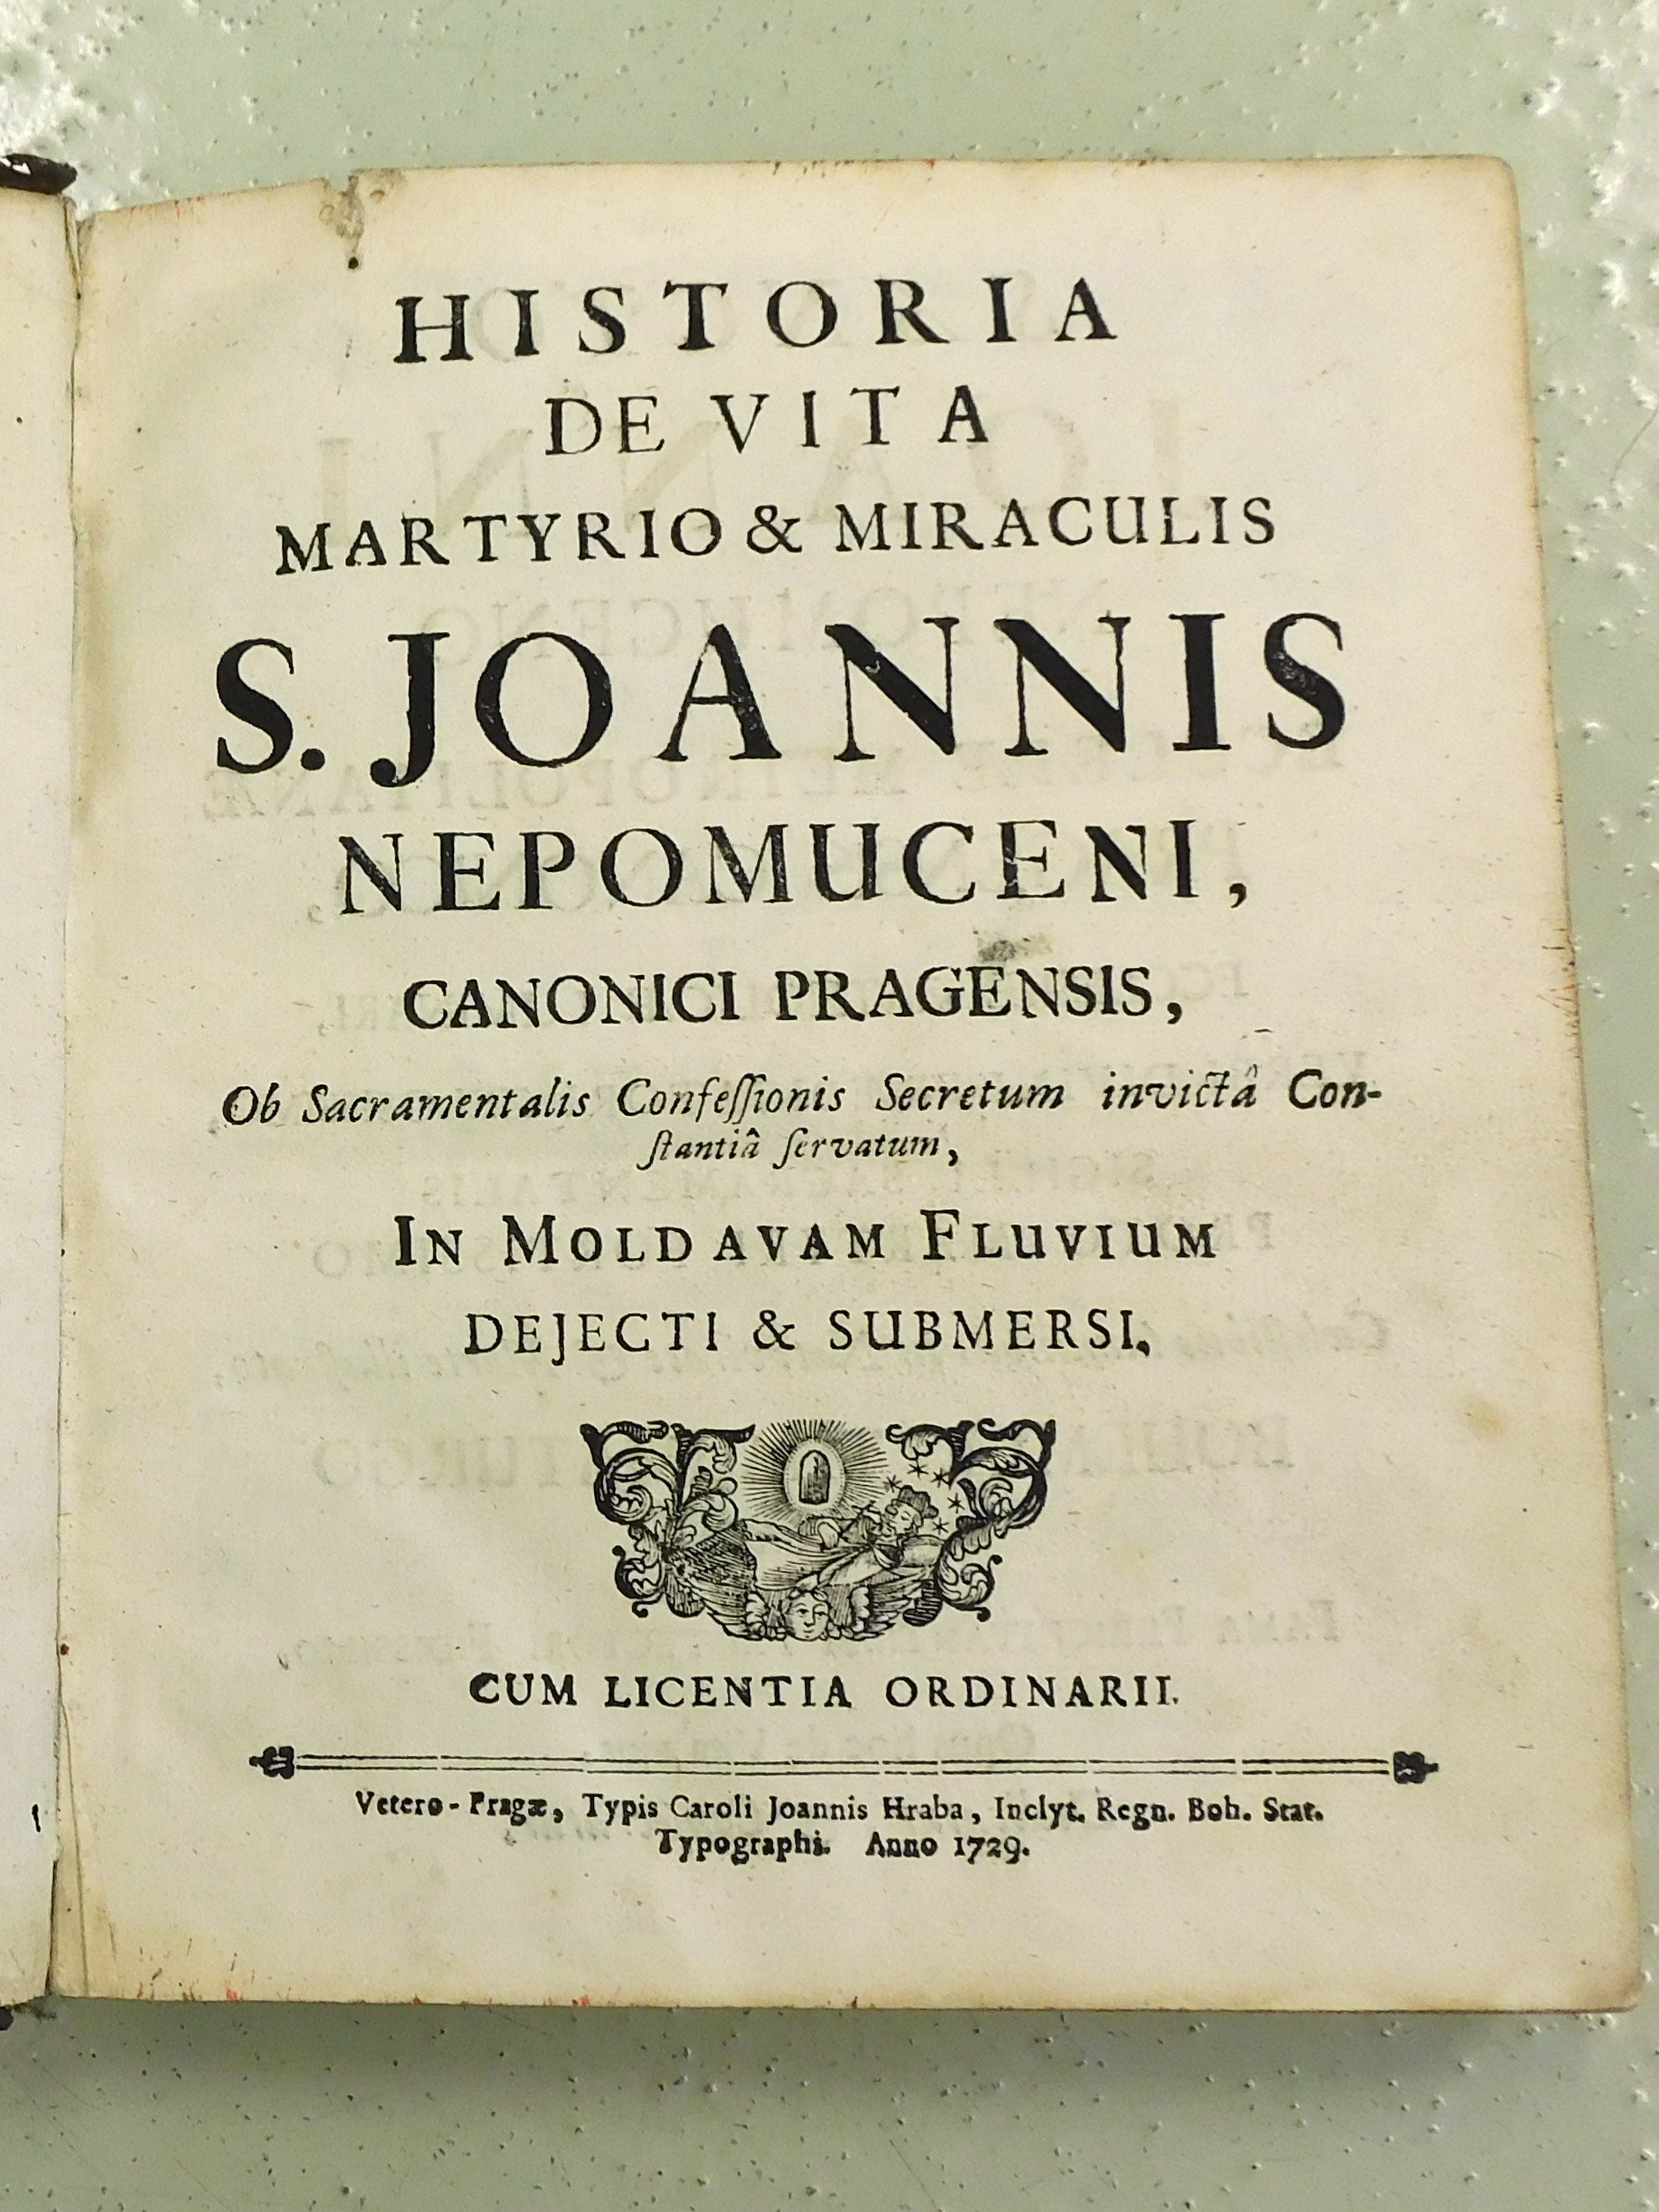 1. Životopis Jana Nepomuckého z roku 1729